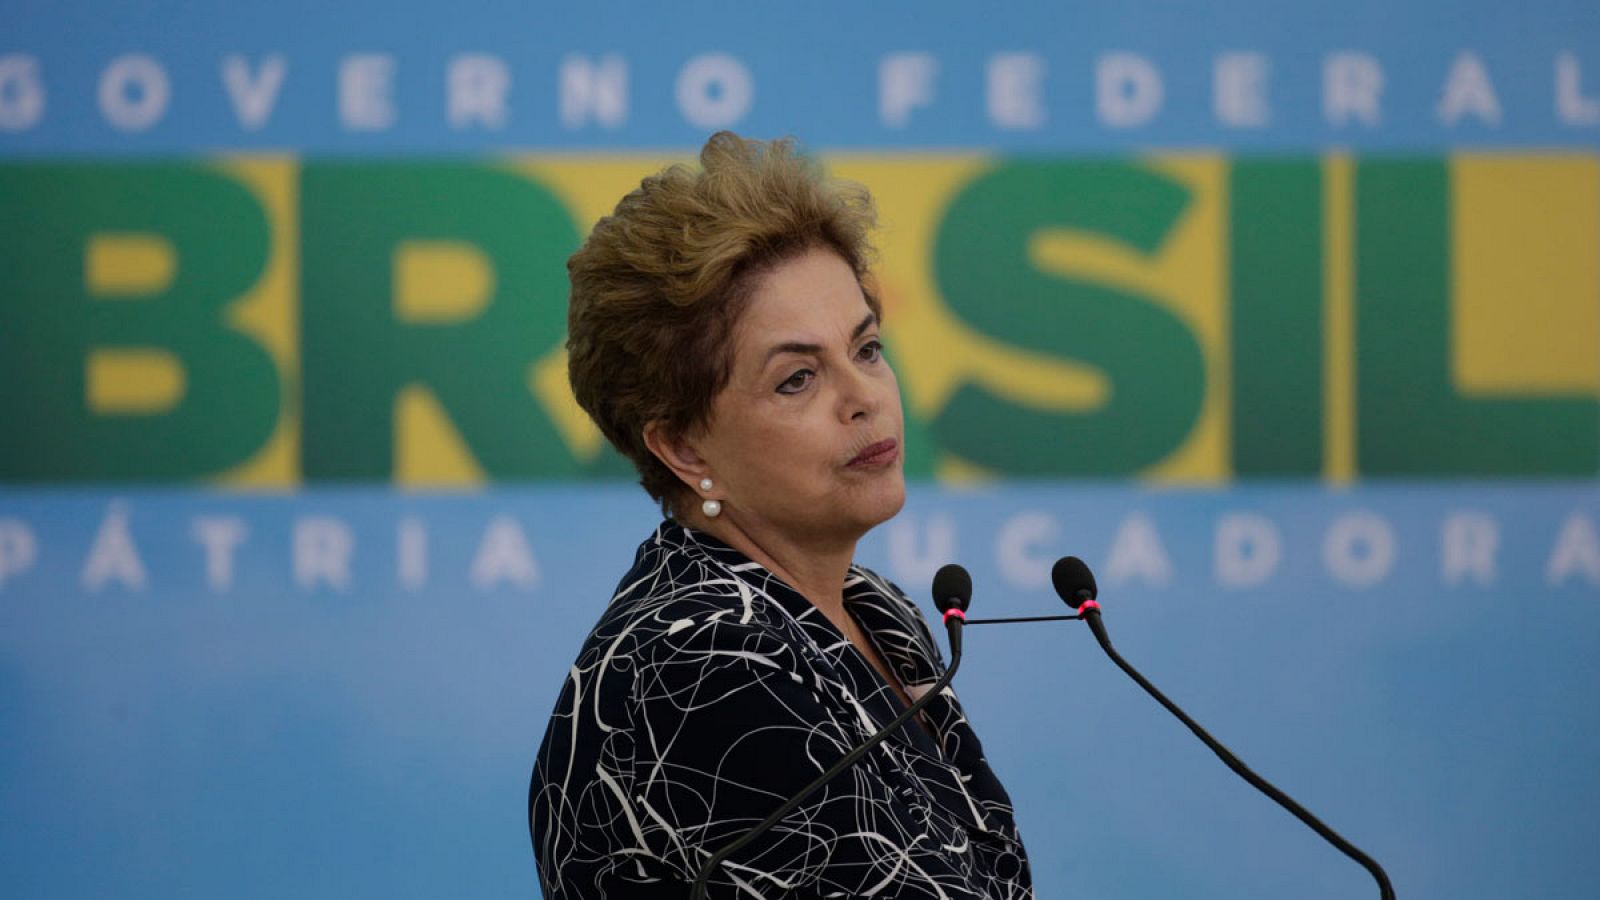 La presidenta suspendida de Brasil Dilma Rousseff en una imagen de archivo de mayo de 2016 en el Palacio del Planalto.